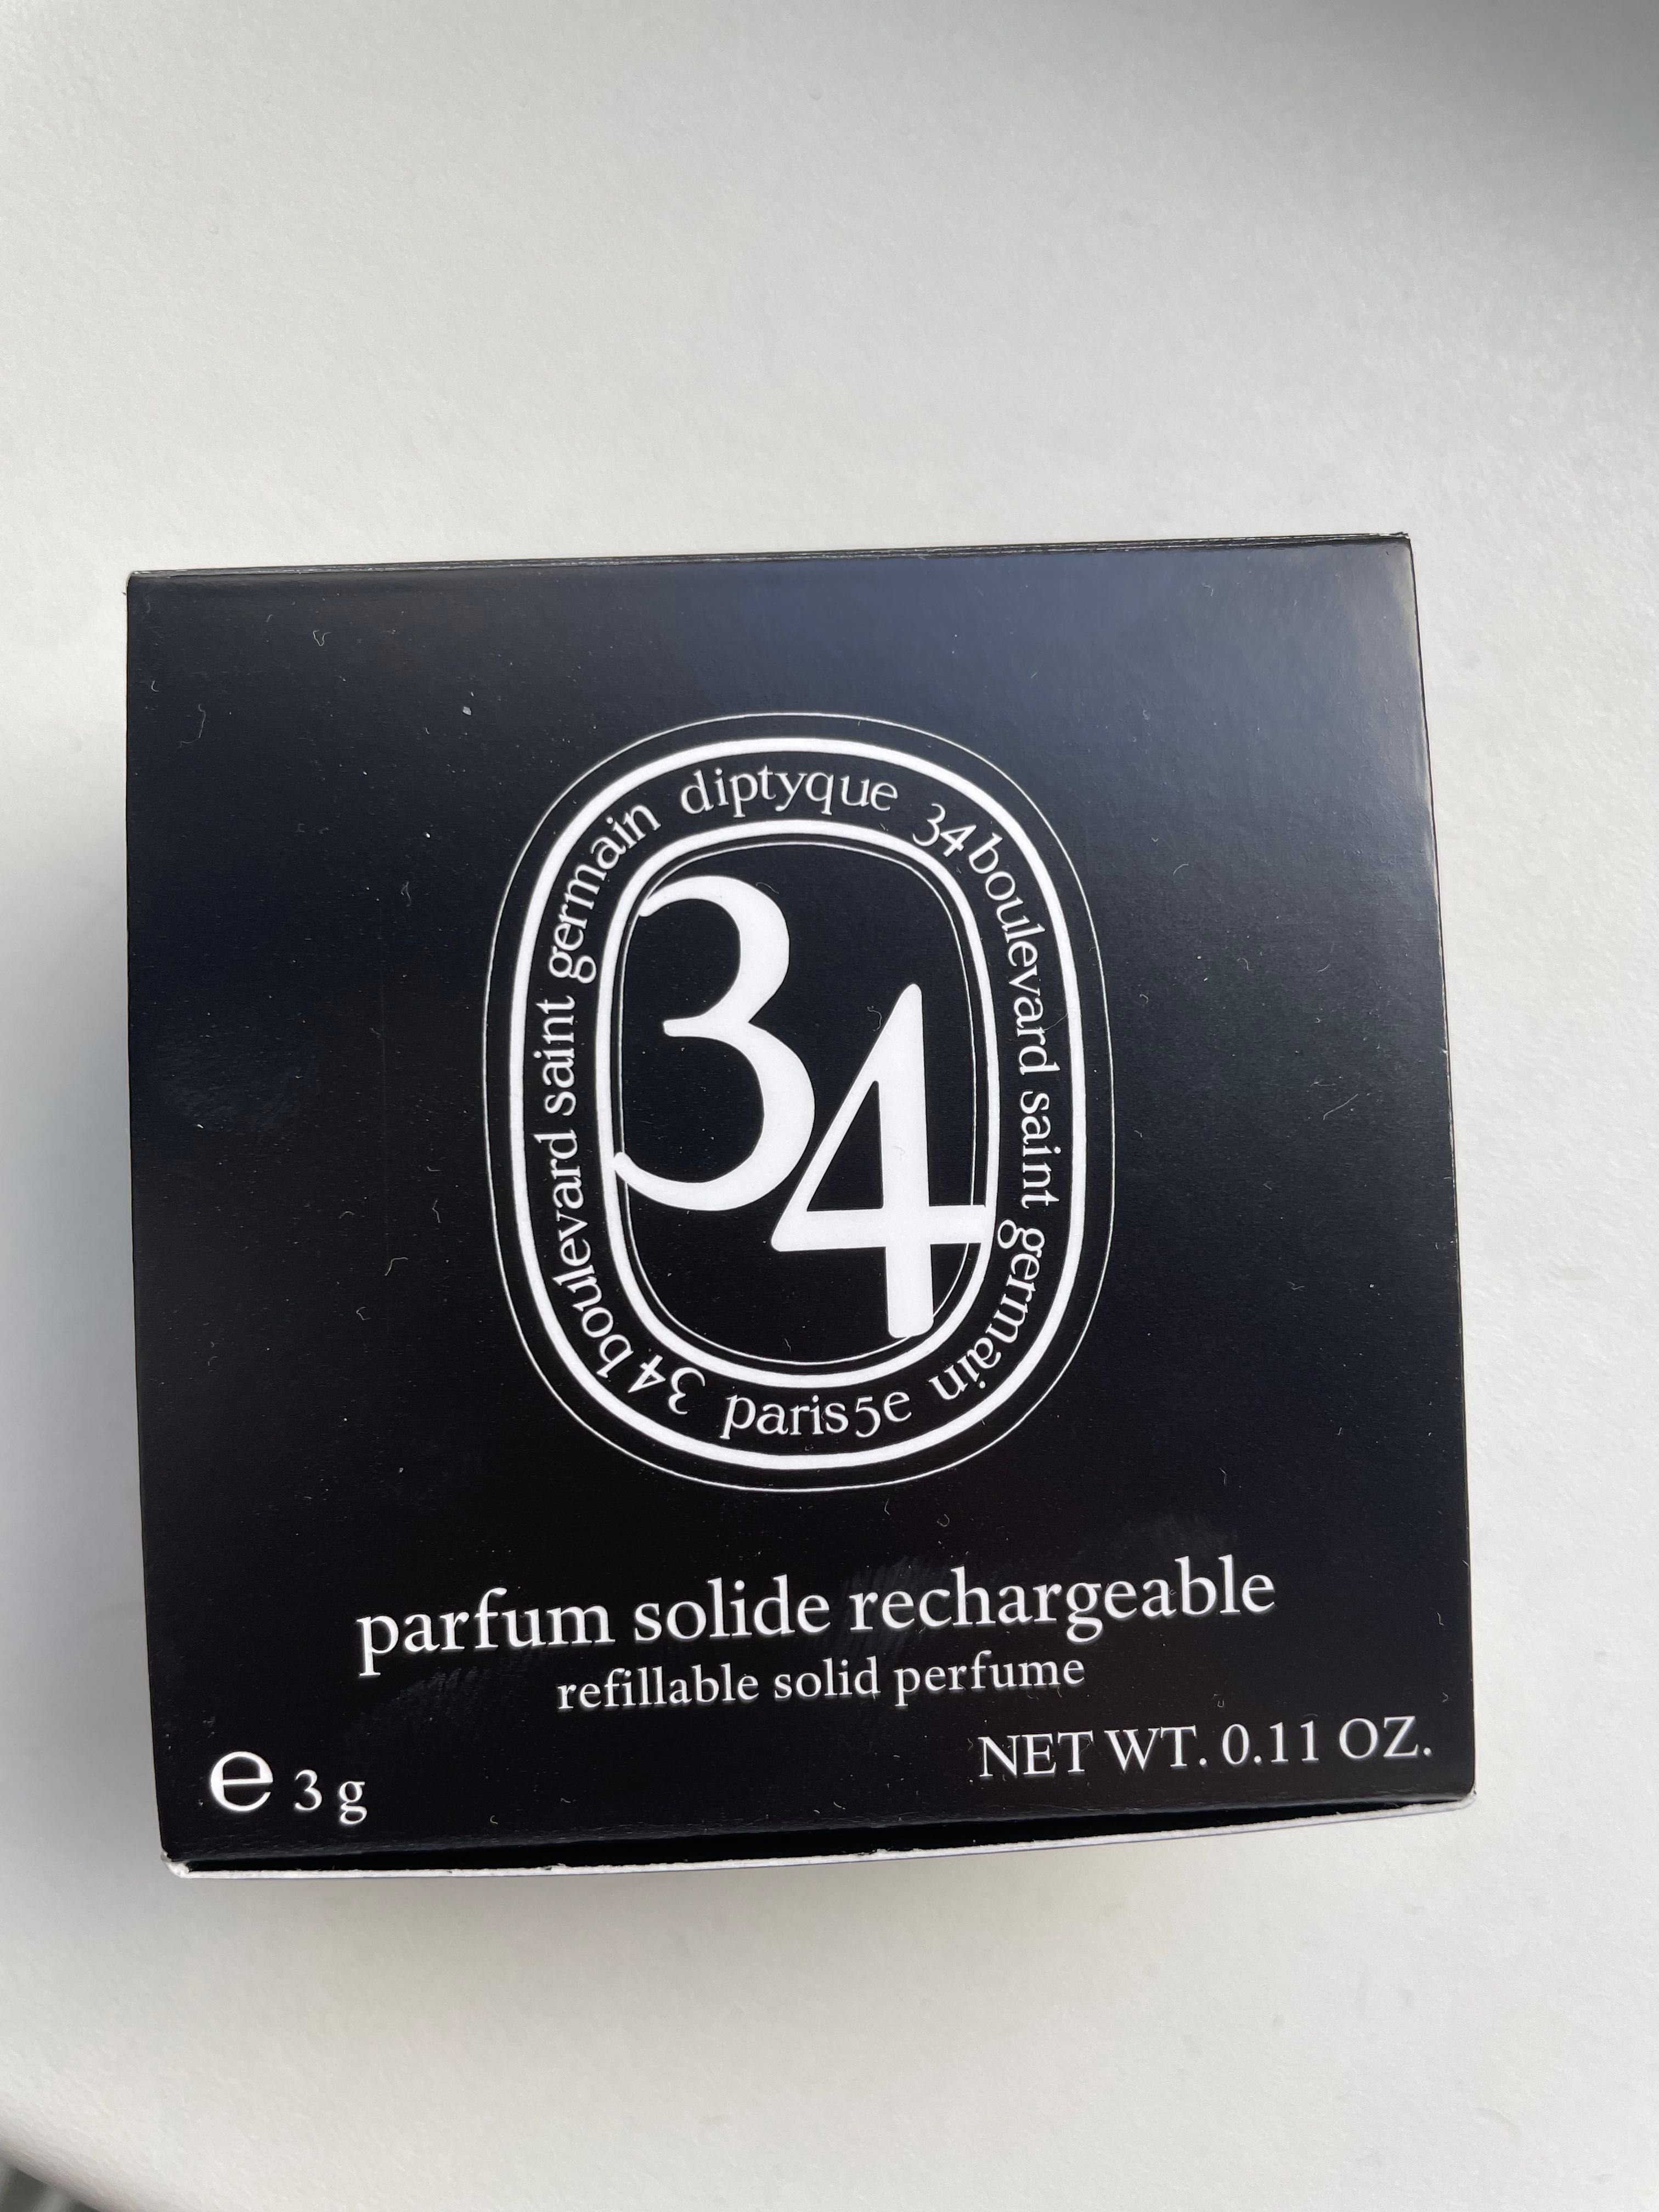 Diptuque solid parfum 34